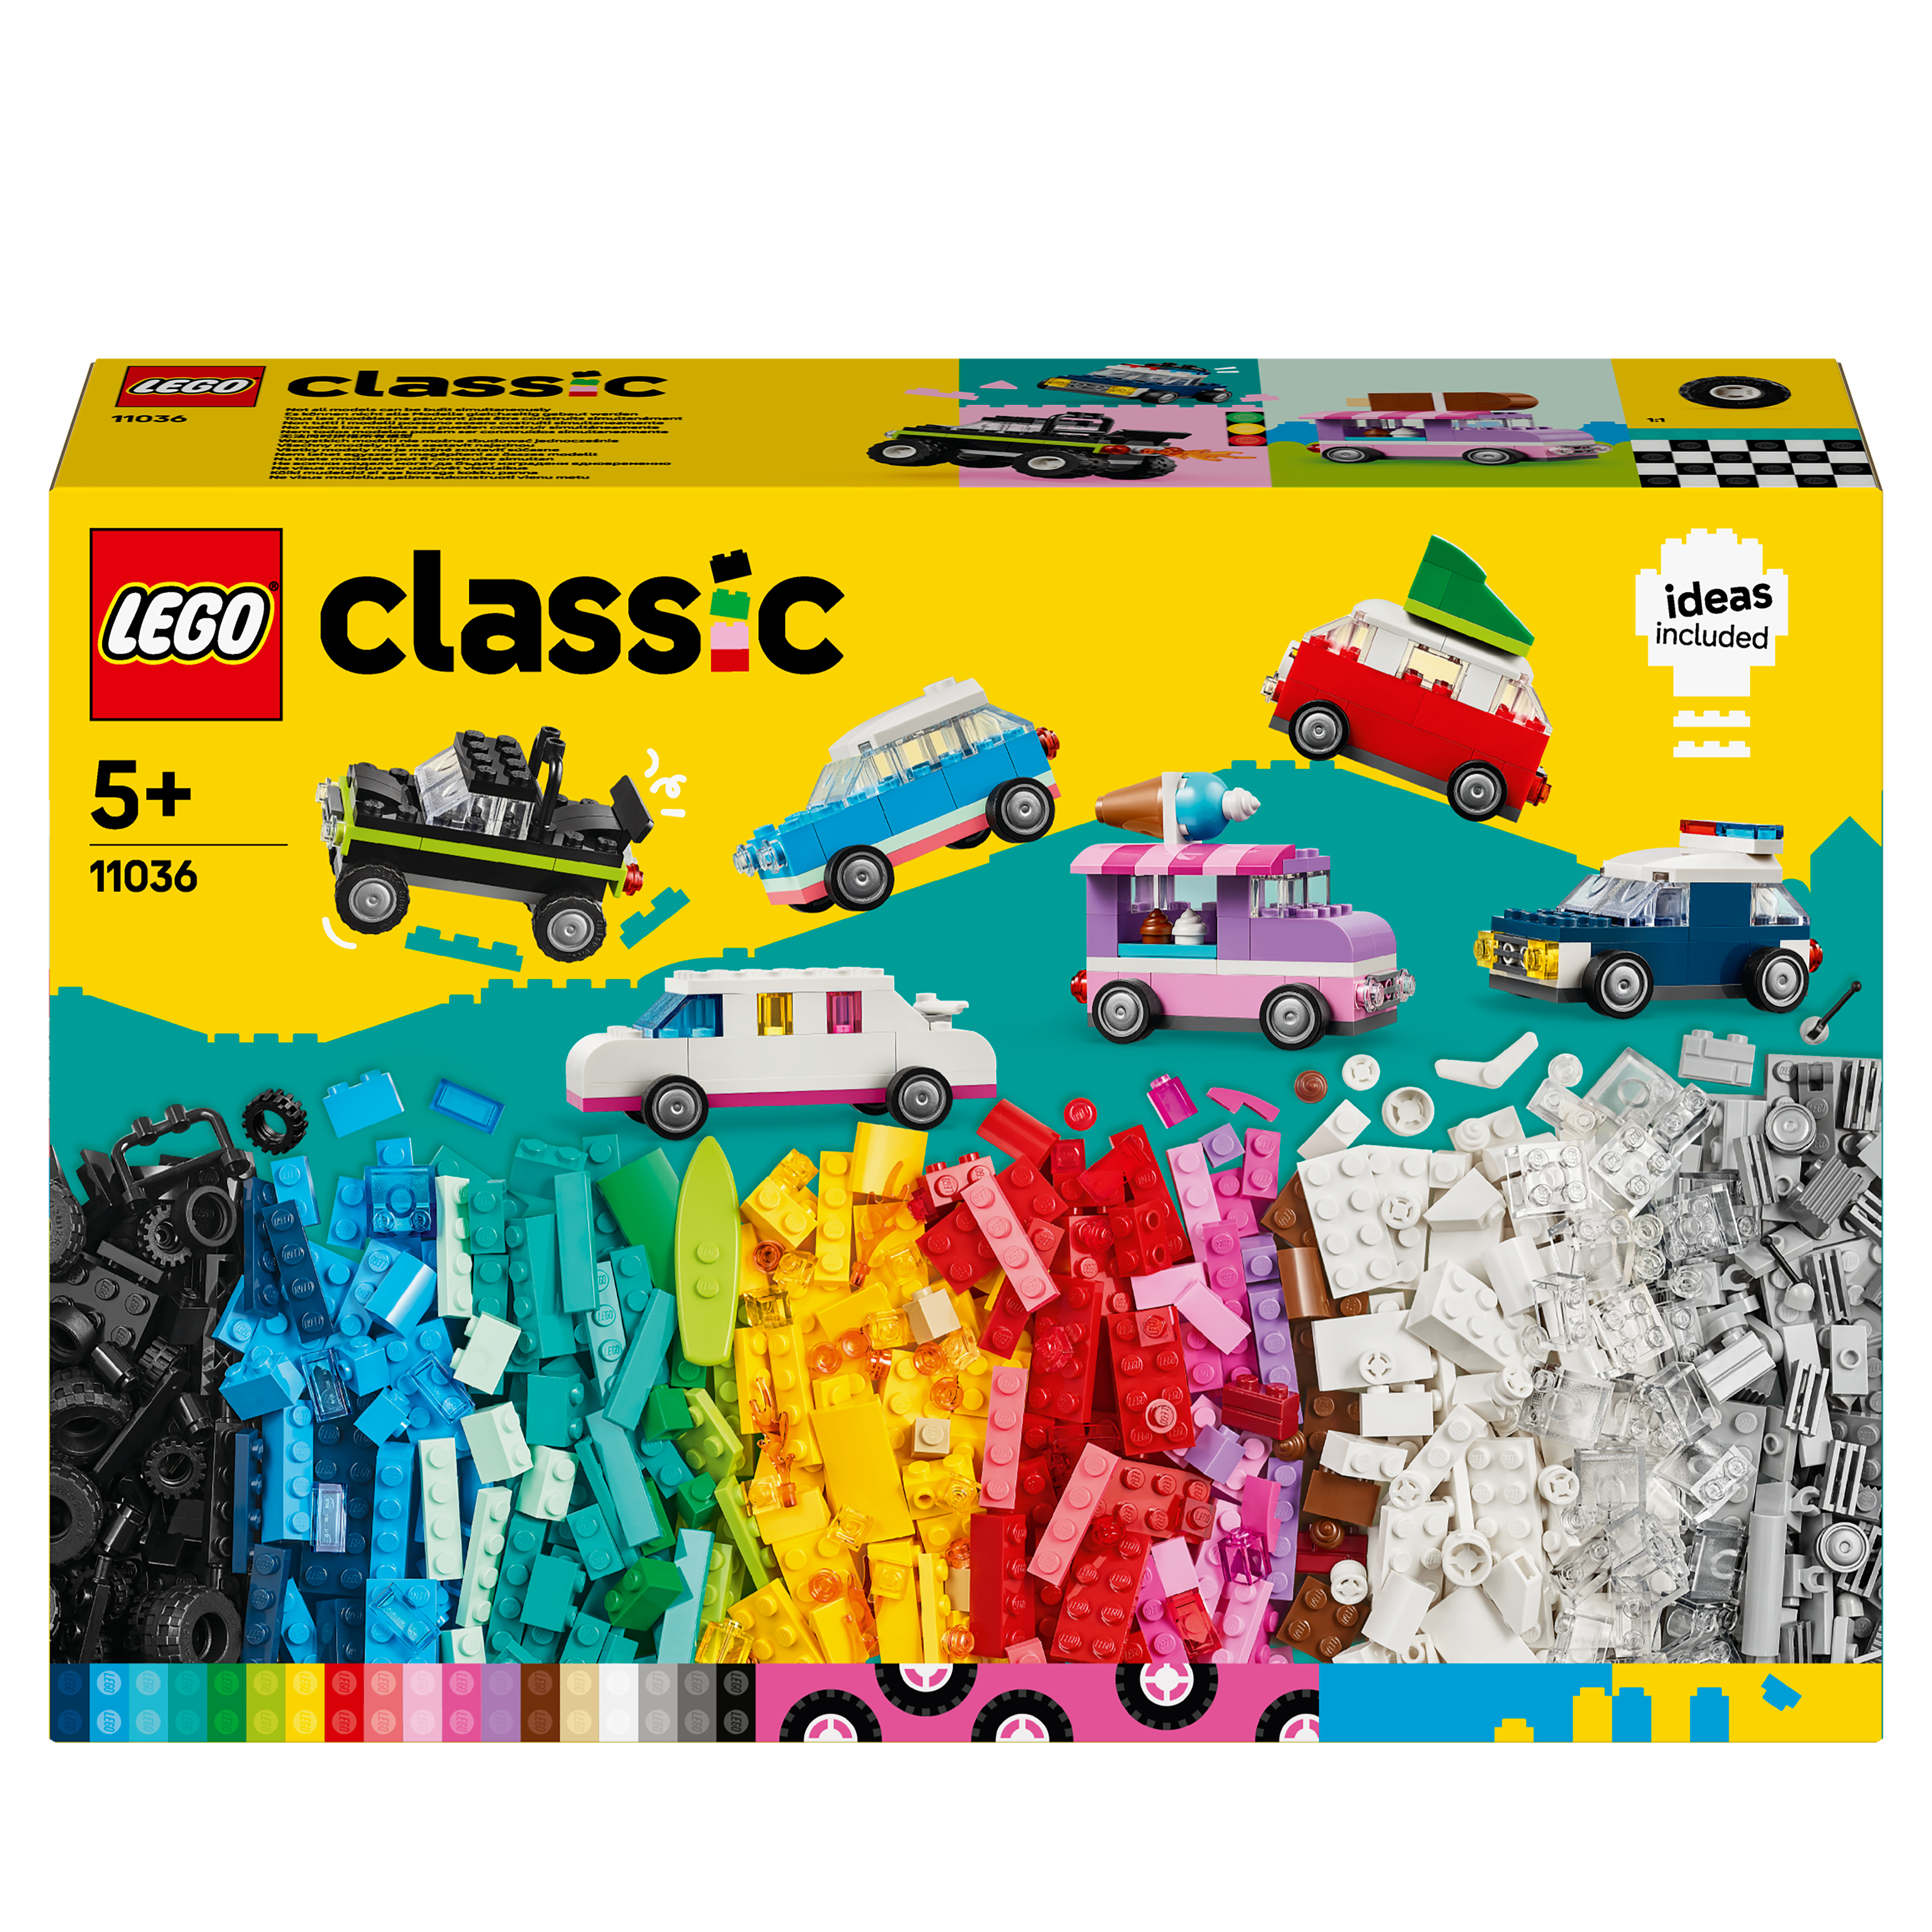 LEGO Classic 11036 Creatieve voertuigen